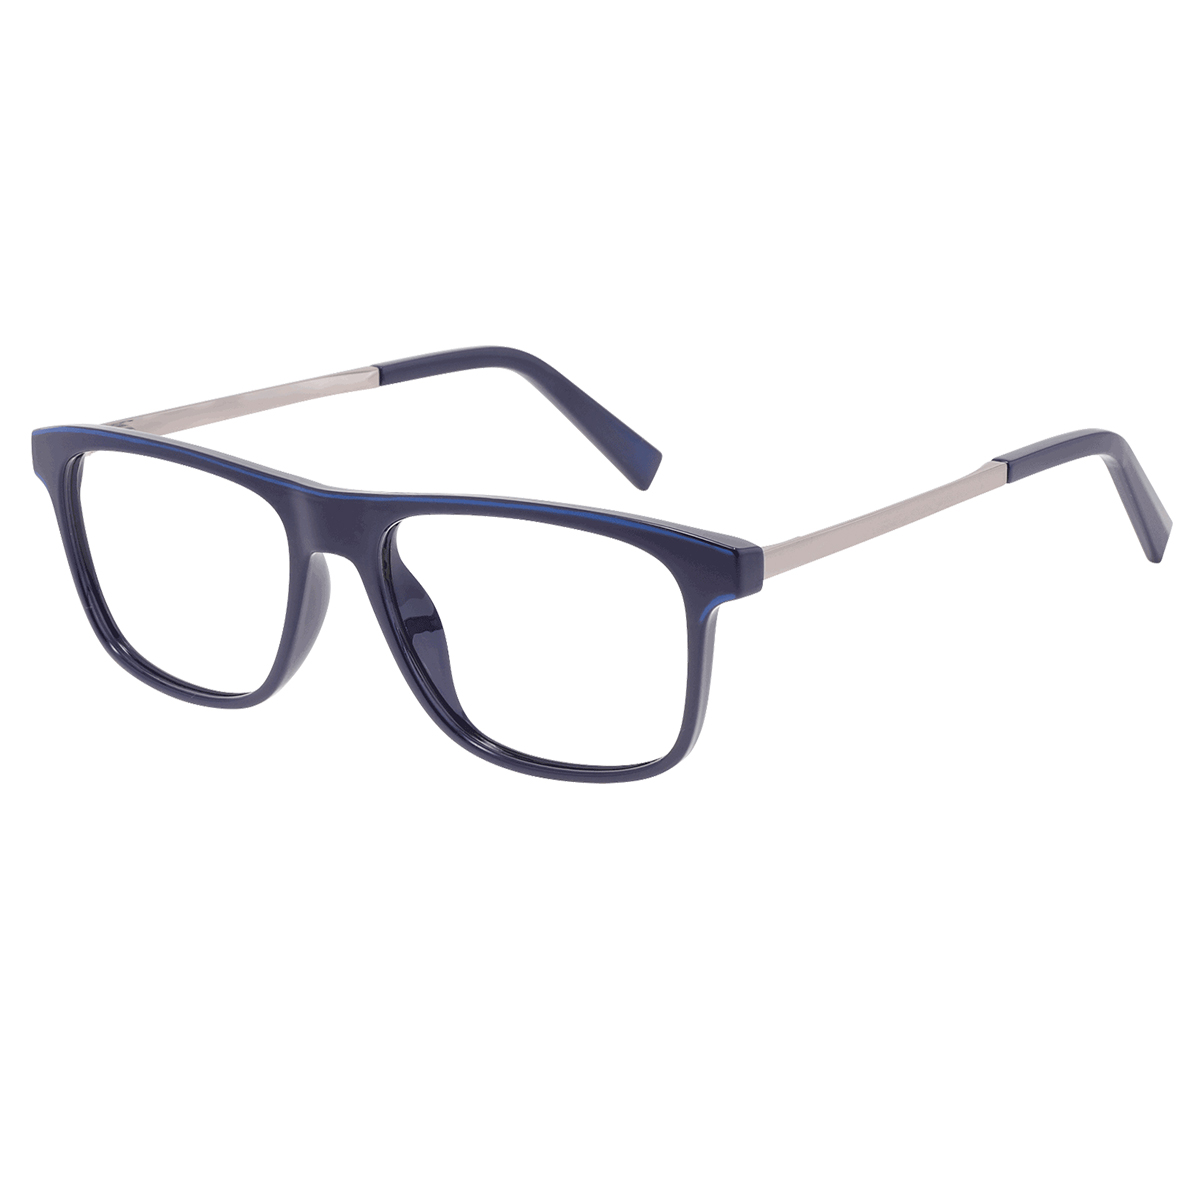 Avery - Rectangle Blue Reading Glasses for Men & Women